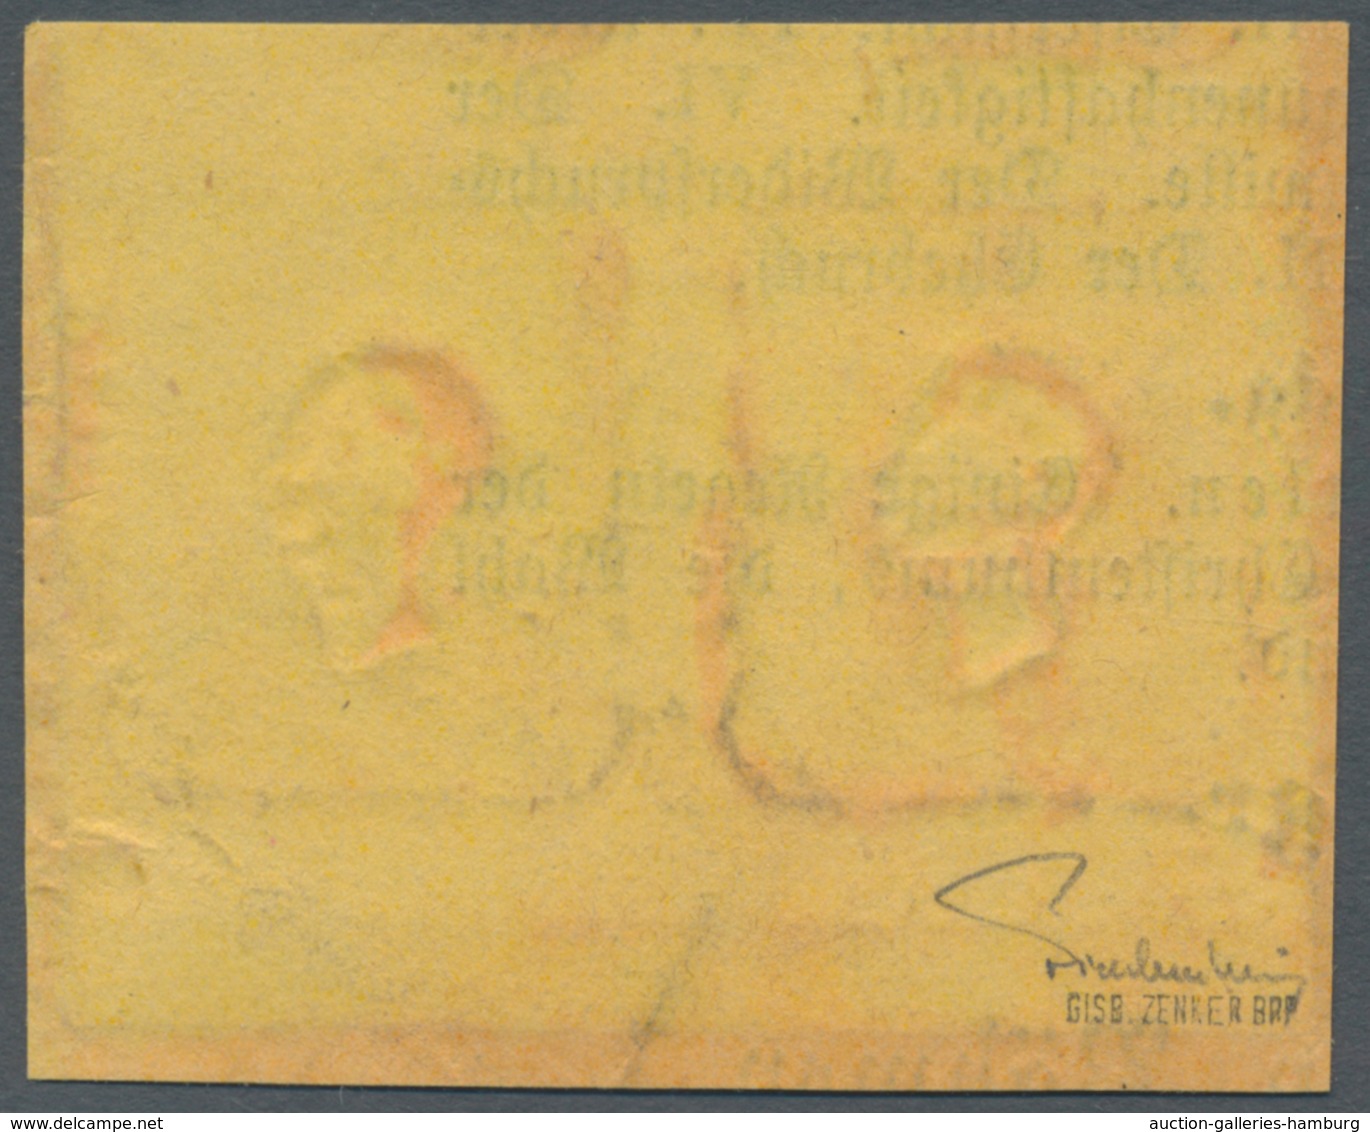 Österreich: 1861, (1,05 Kreuzer) Grau Zeitungsmarke, Waagerechtes Paar Vom Unteren Bogenrand Mit Kom - Unused Stamps